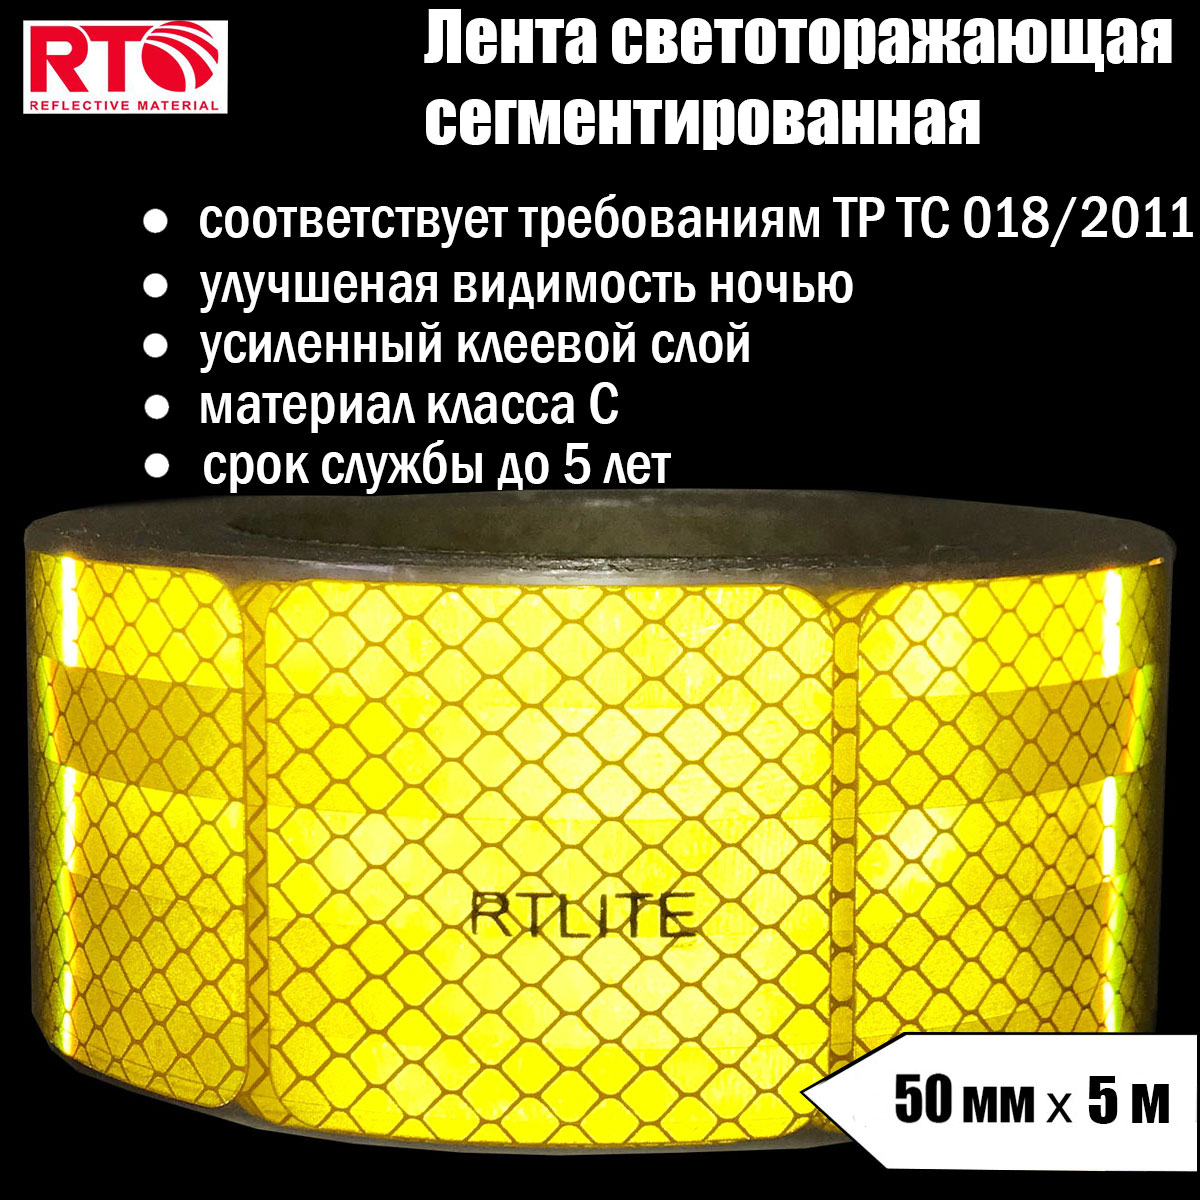 Лента светоотражающая сегментированная RTLITE RT-V104 для контурной маркировки, 50мм х 5м